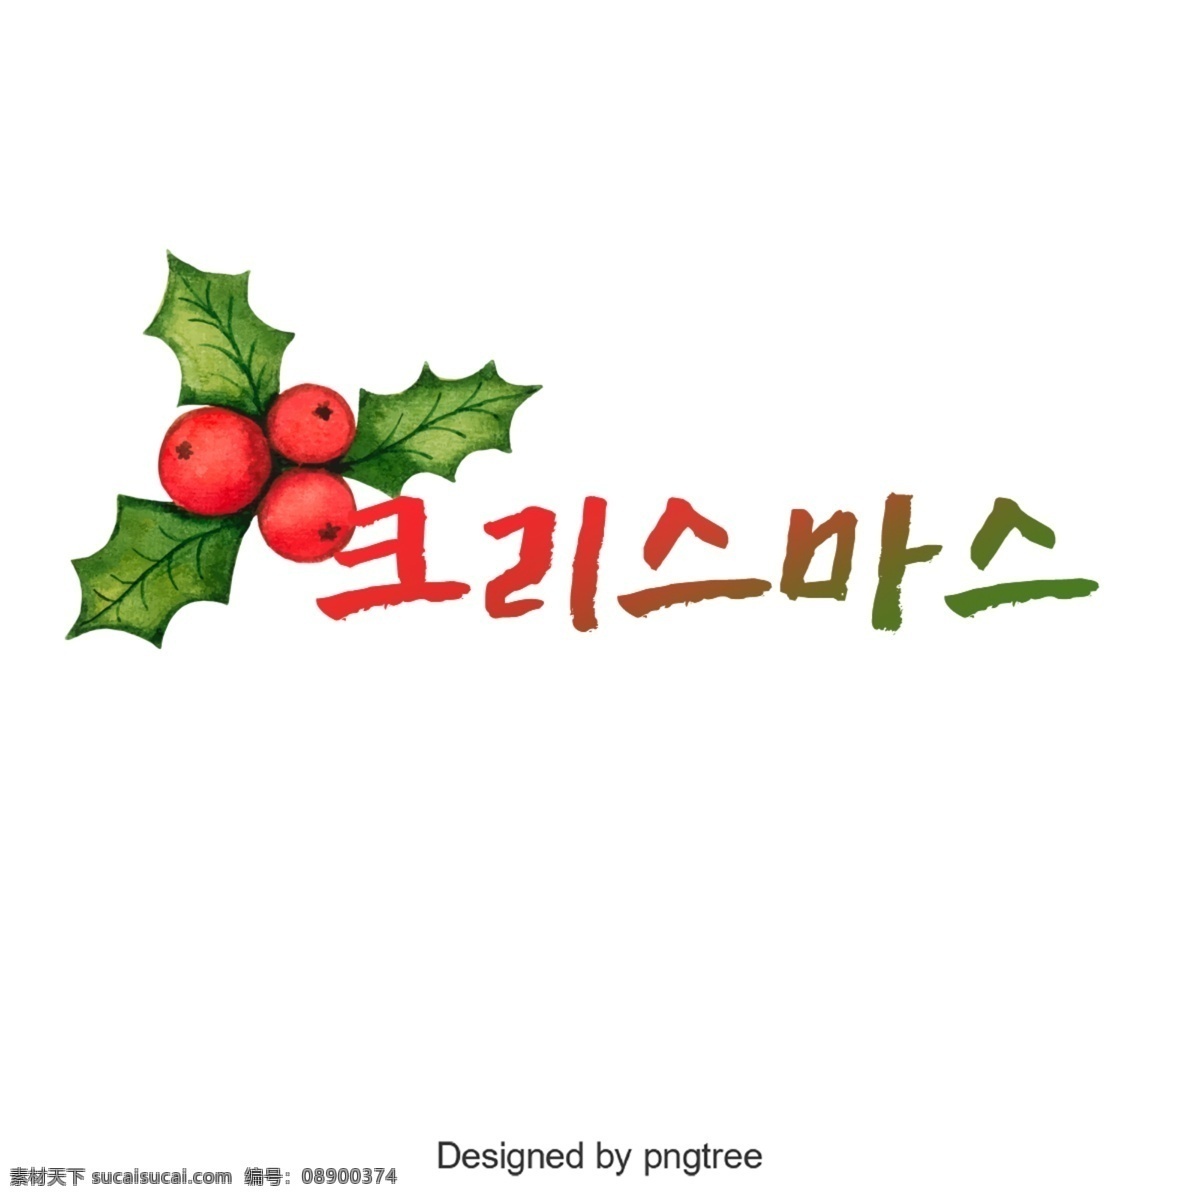 圣诞快乐 逐渐 韩国 字体 韩文 字形 可爱 谢和 进步 圣诞节